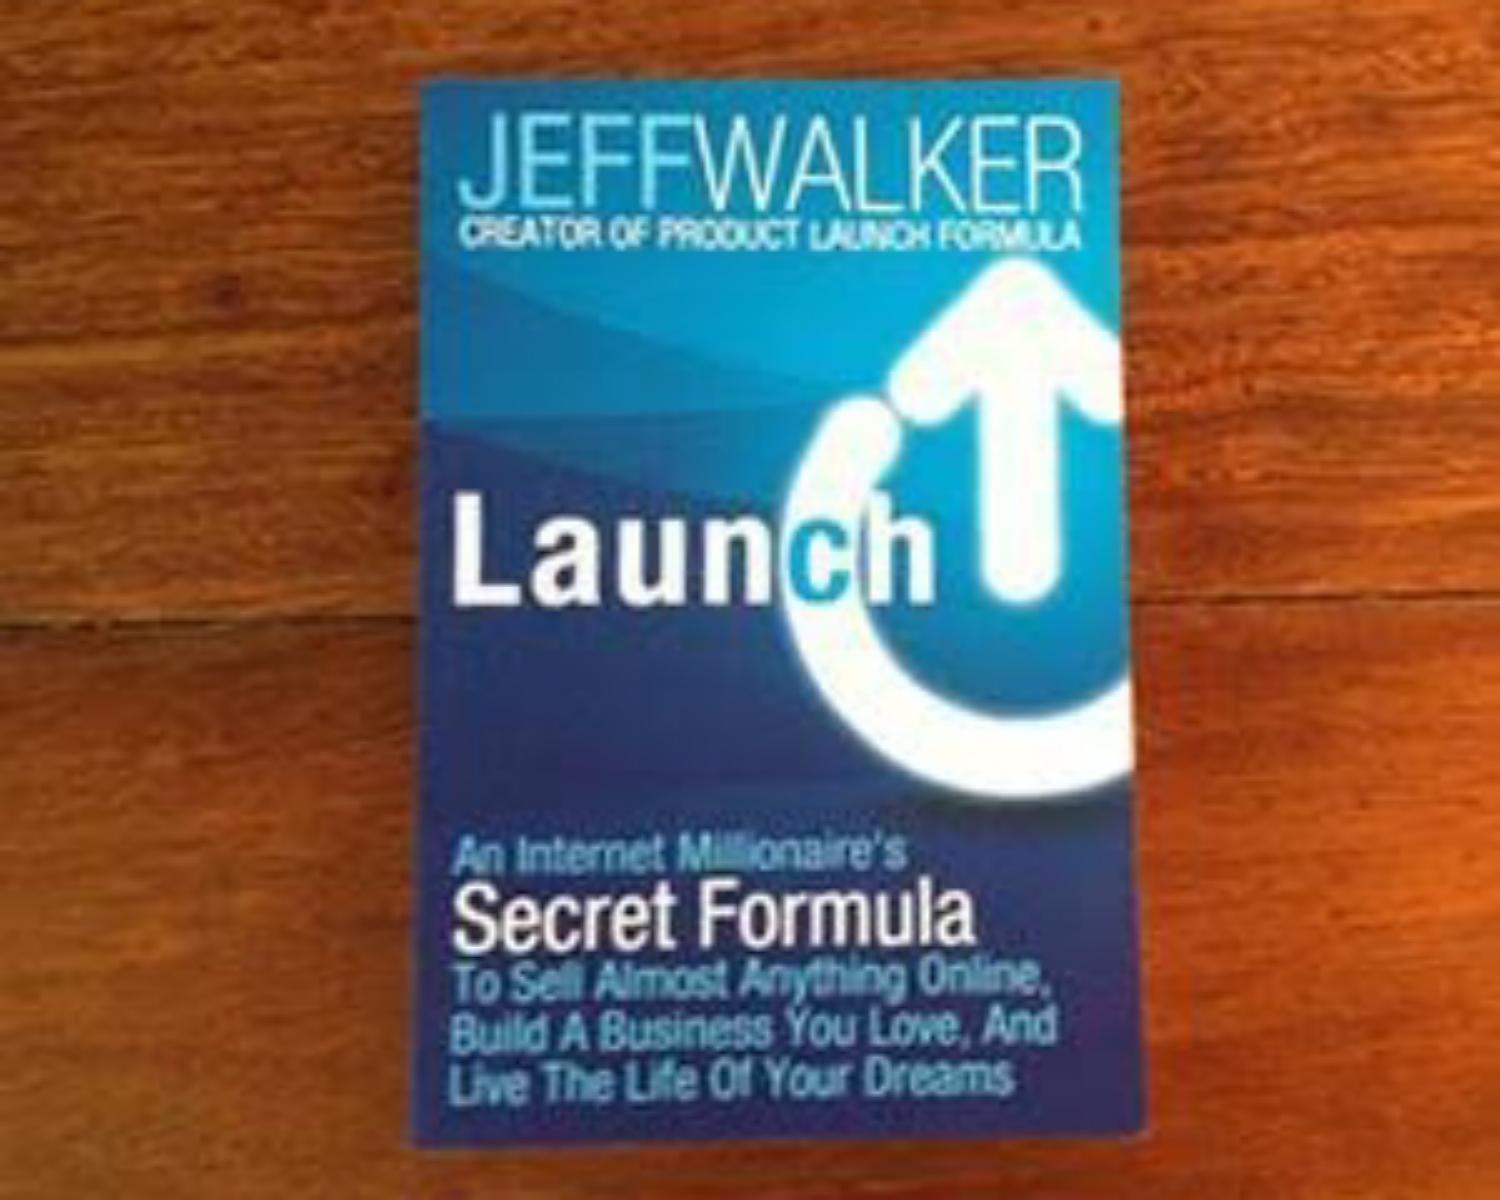 "Launch" by Jeff walker